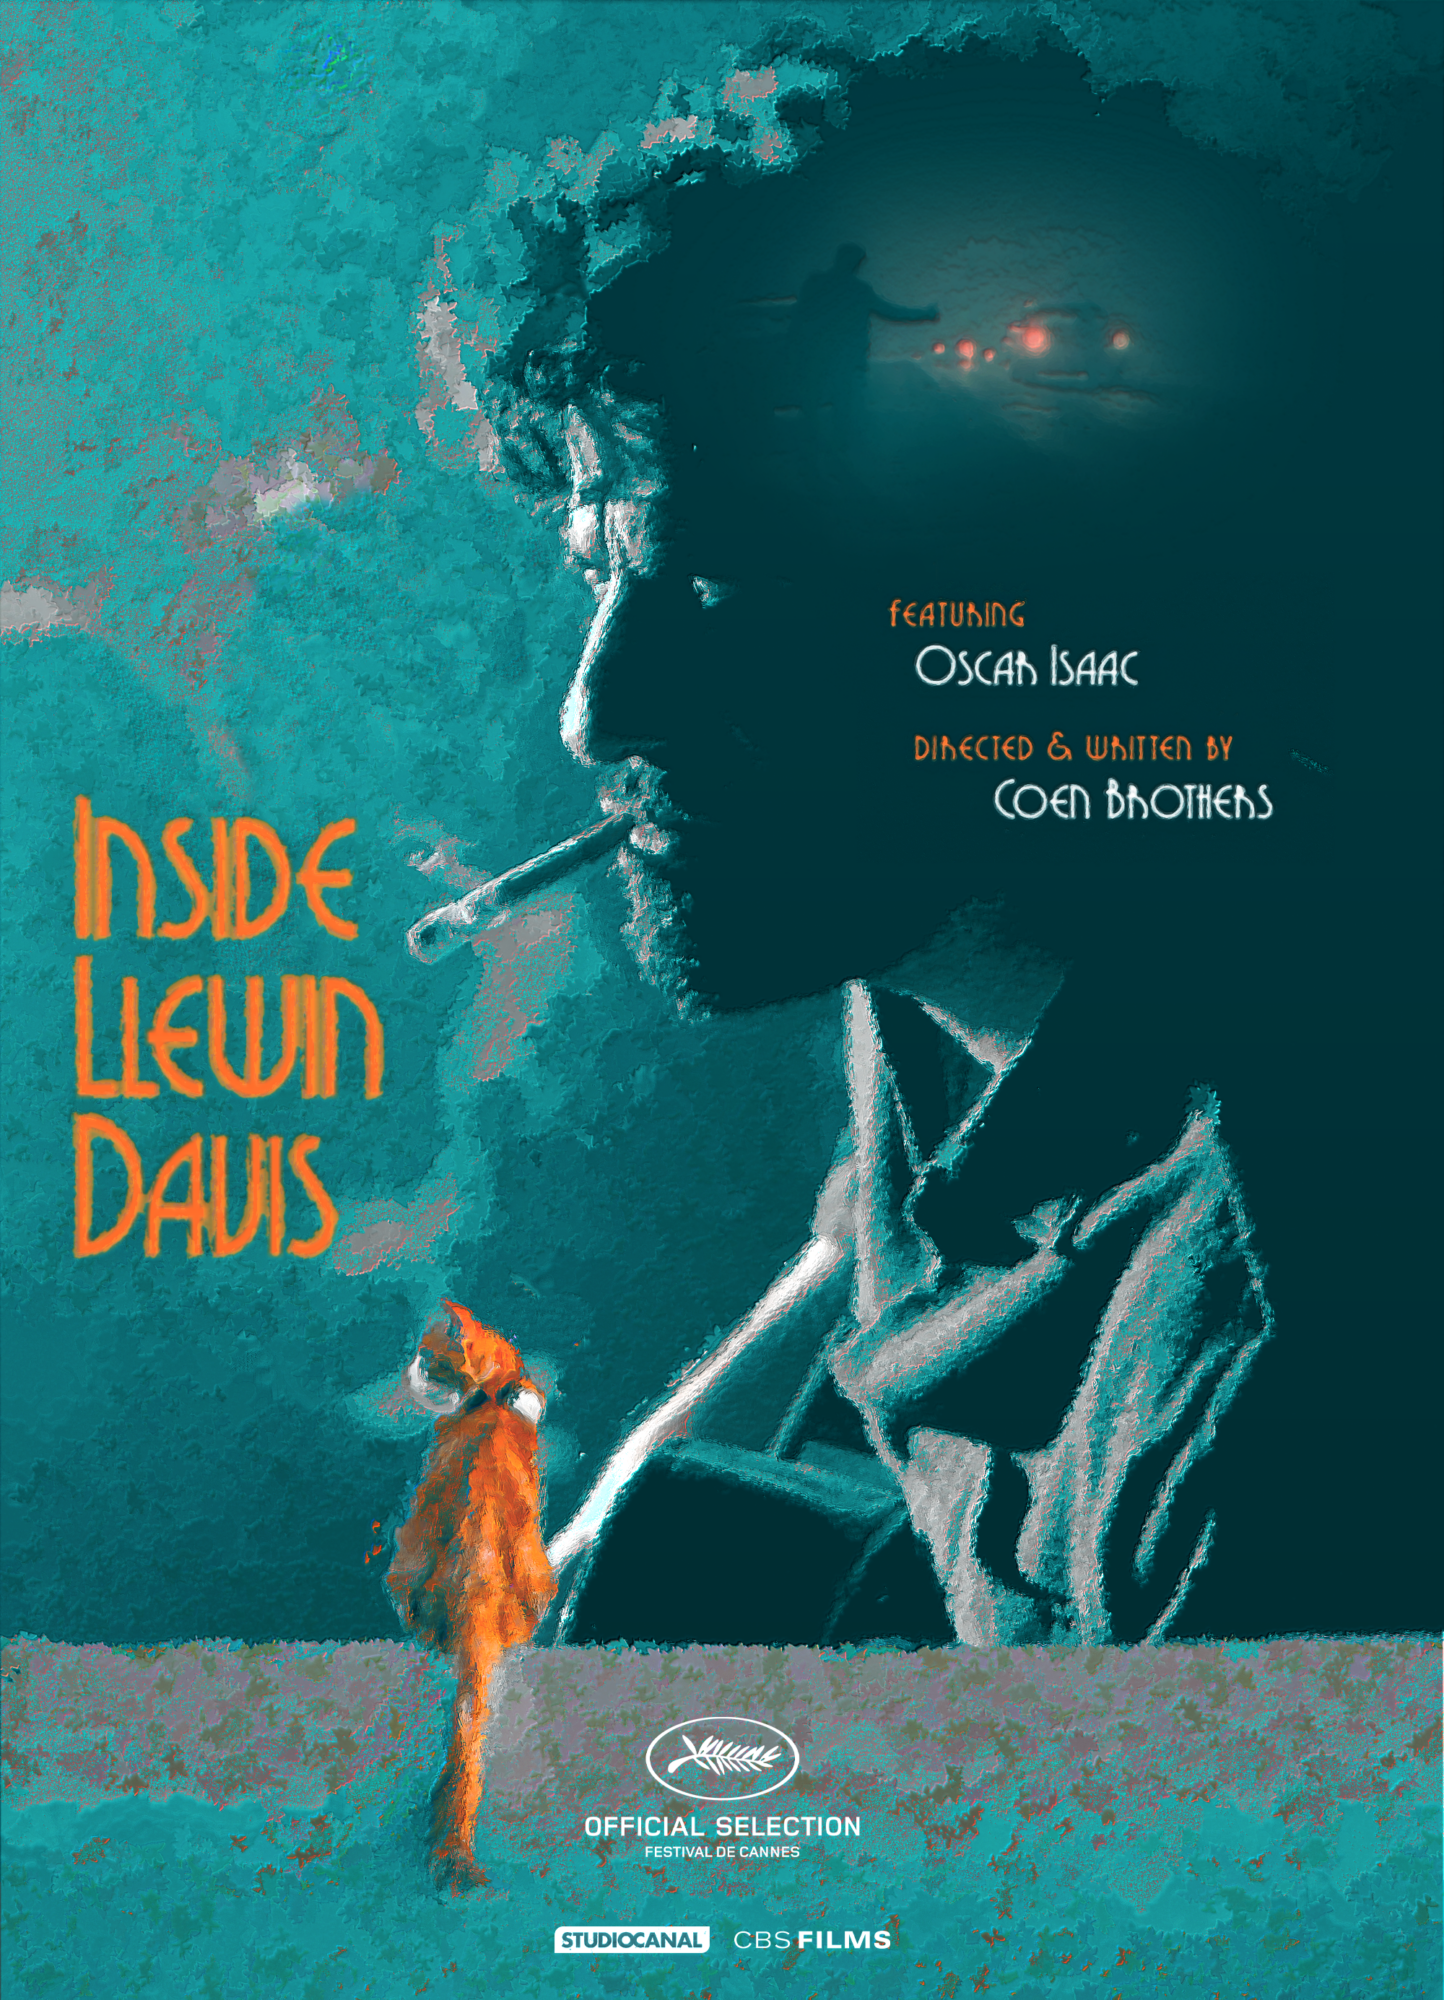 Inside Llewyn Davis (2013) - News - IMDb